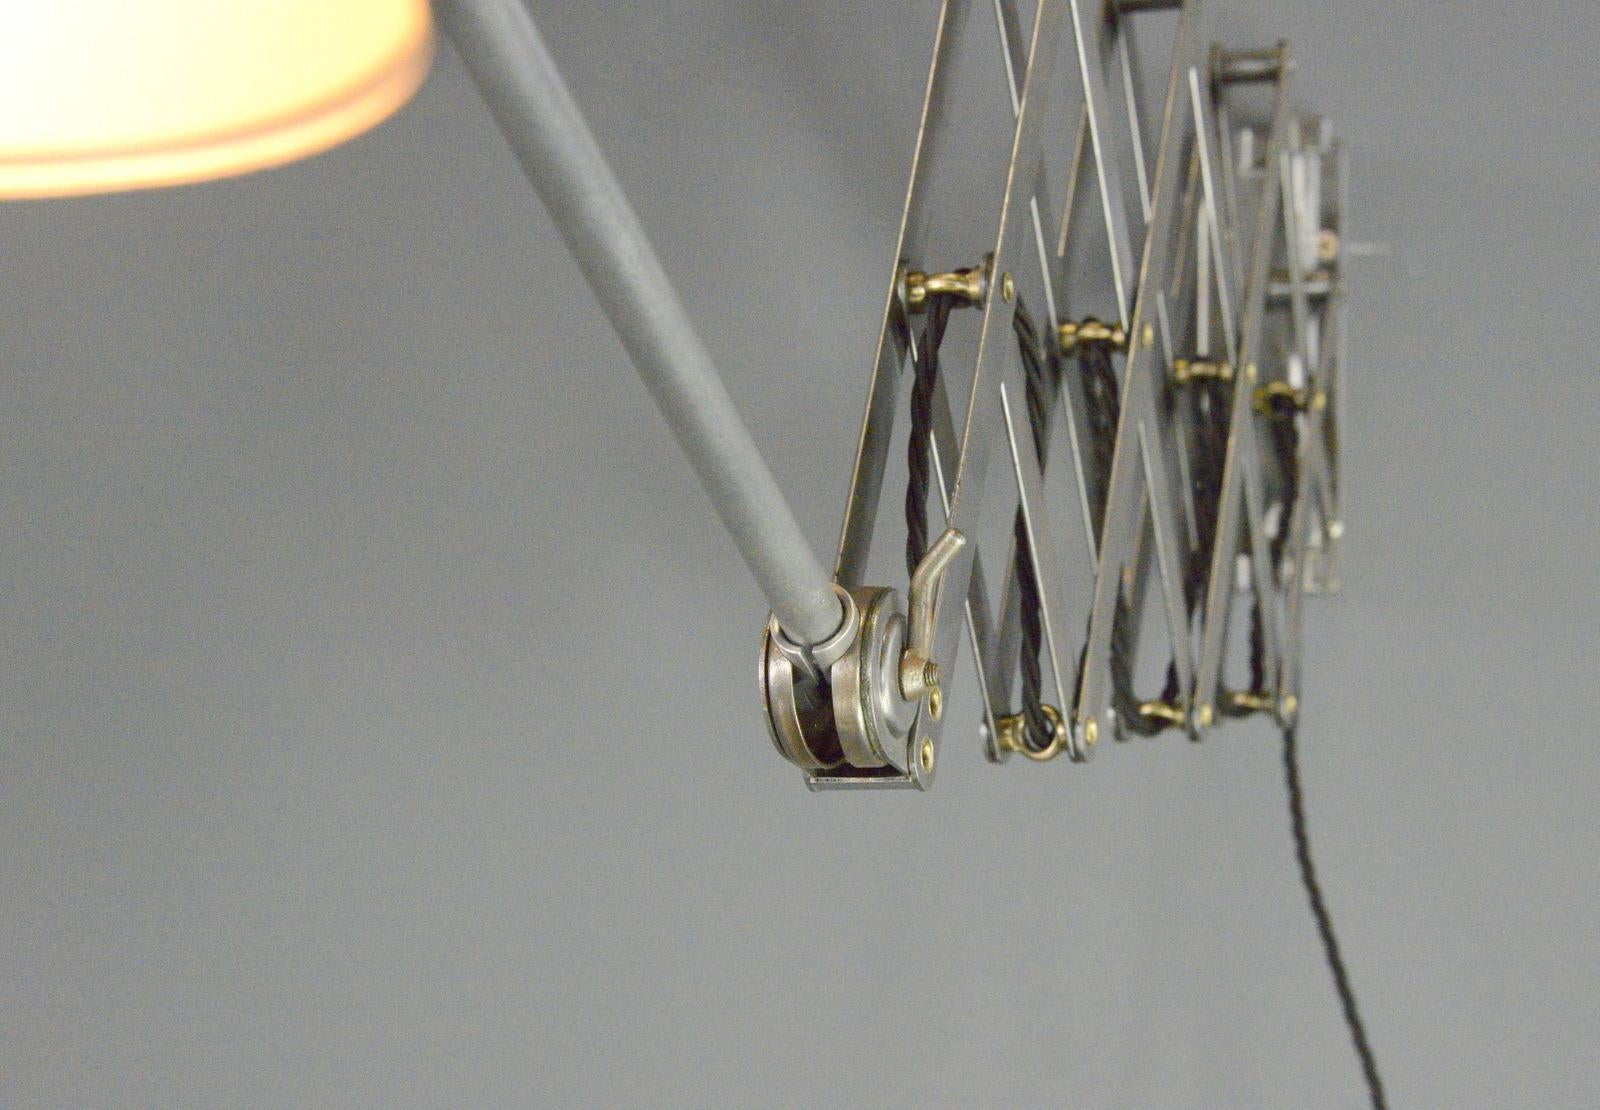 Lampe à ciseaux de Bunte & Remmler Circa 1930s

- Mécanisme de ciseaux en acier extensible
- Abat-jour en acier
- Interrupteur à bascule marche/arrêt d'origine sur l'abat-jour
- Convient aux ampoules de type e27
- Fabriqué par Bunte & Remmler,